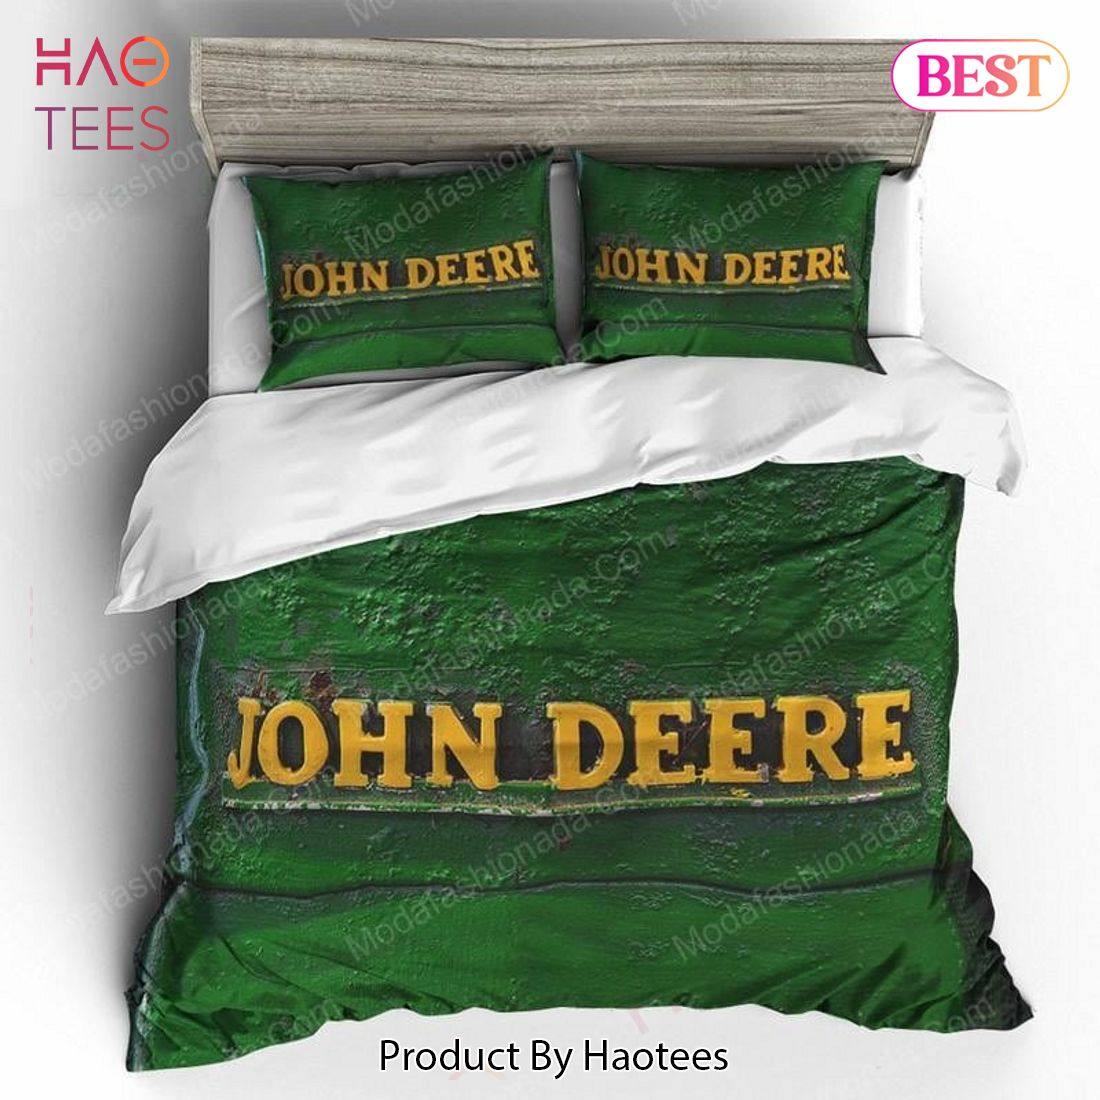 Buy John Deere Equipment Brands 3 Bedding Set Bed Sets, Bedroom Sets, Comforter Sets, Duvet Cover, Bedspread